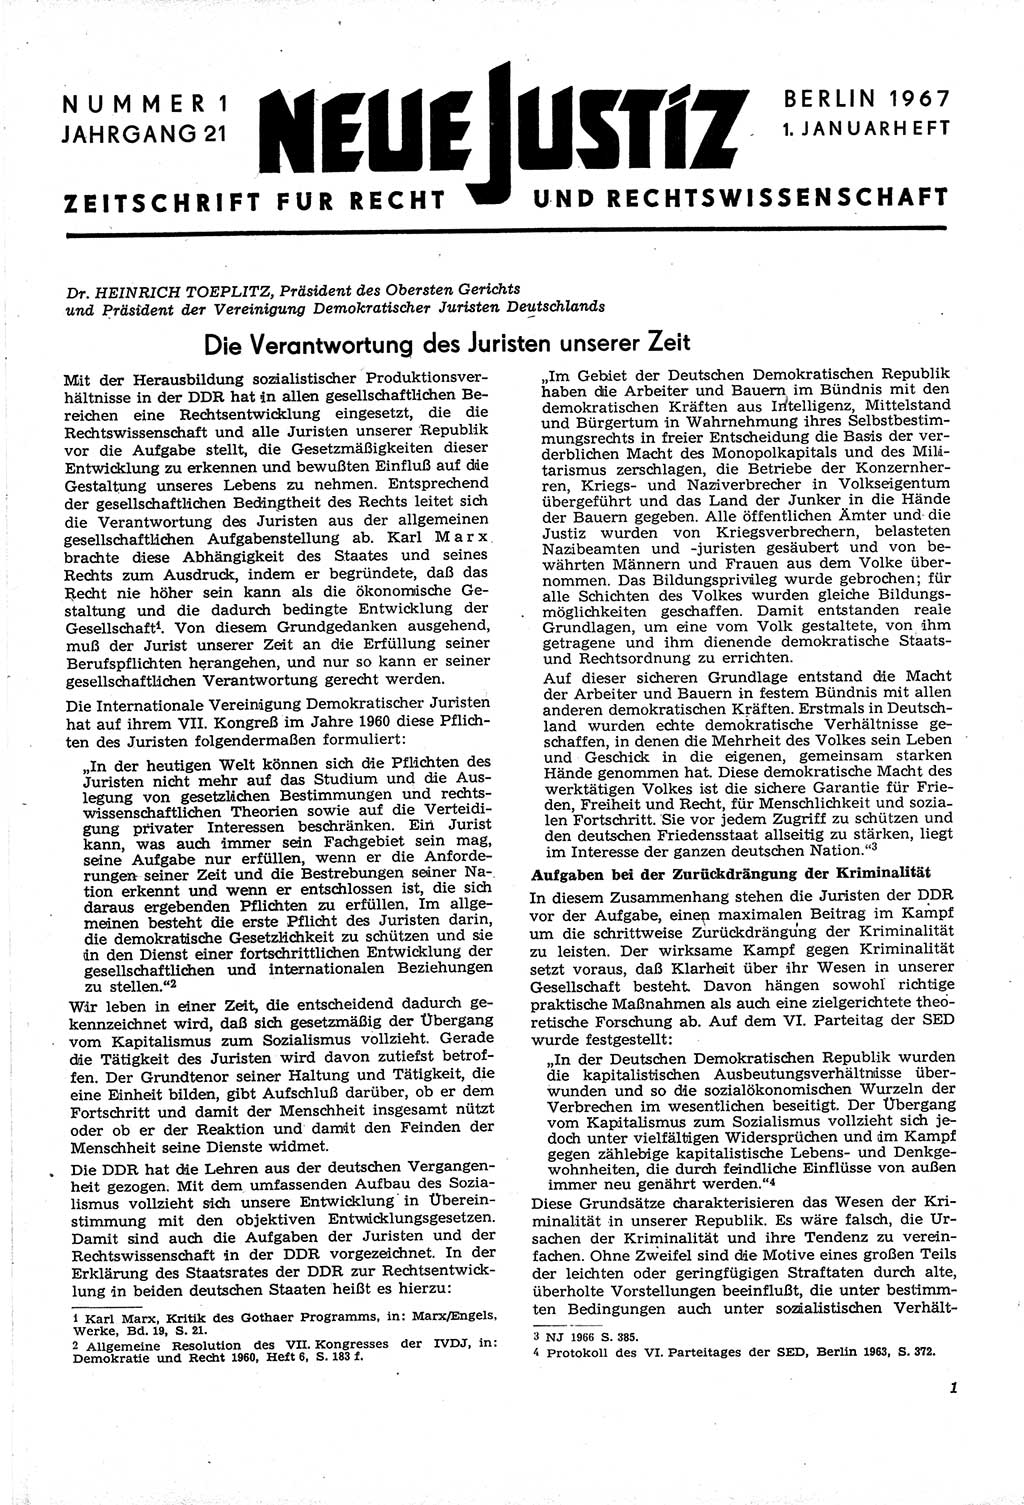 Neue Justiz (NJ), Zeitschrift für Recht und Rechtswissenschaft [Deutsche Demokratische Republik (DDR)], 21. Jahrgang 1967, Seite 1 (NJ DDR 1967, S. 1)